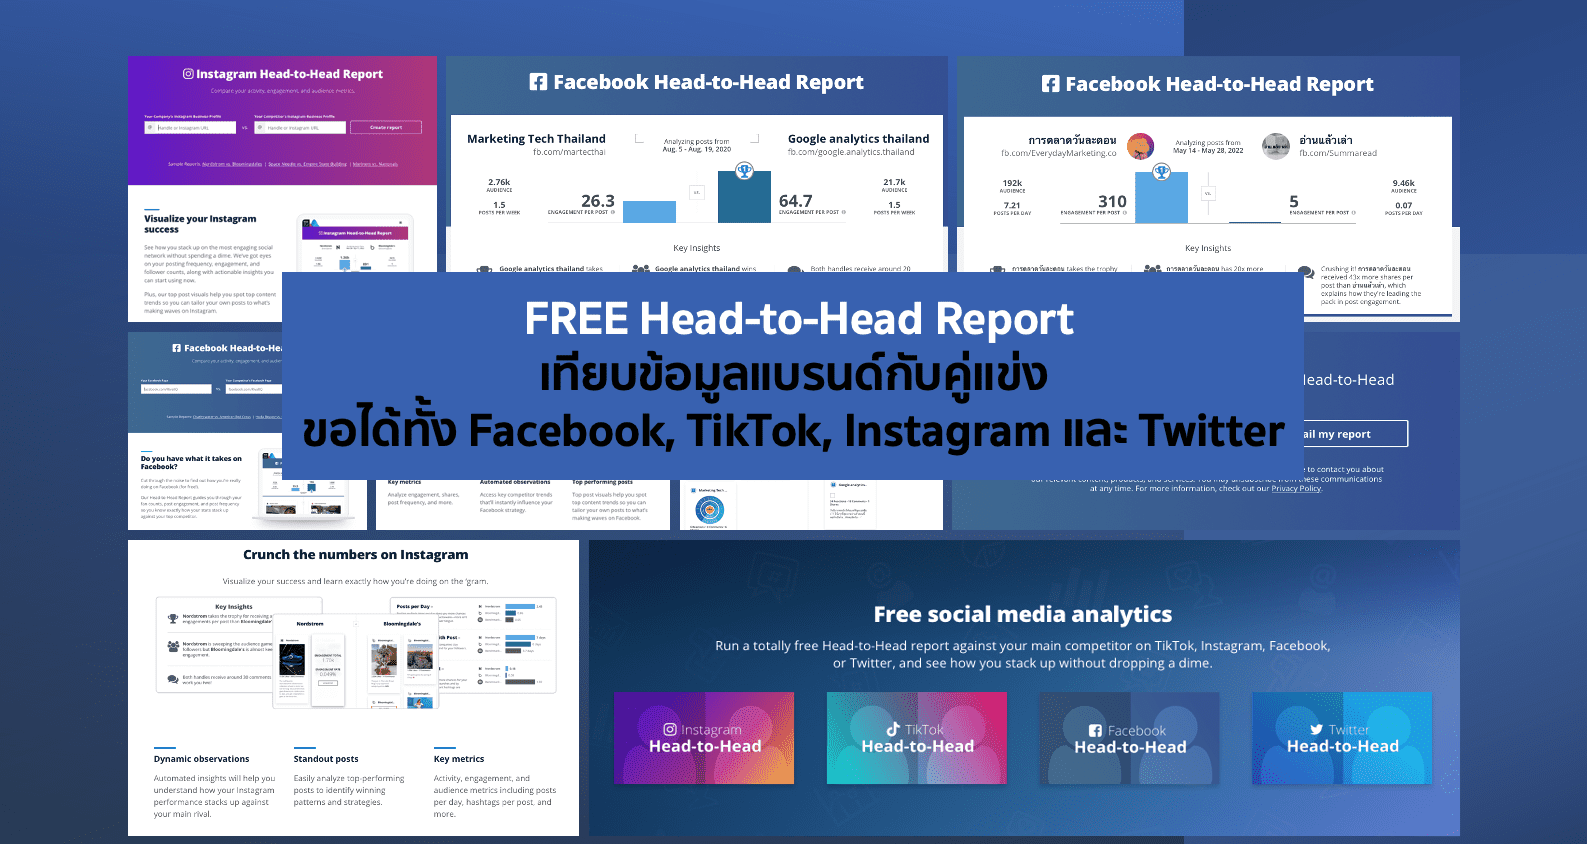 แนะนำ FREE Head-to-Head Report ของเราและคู่แข่ง ขอได้ทั้ง FB TikTok IG TW